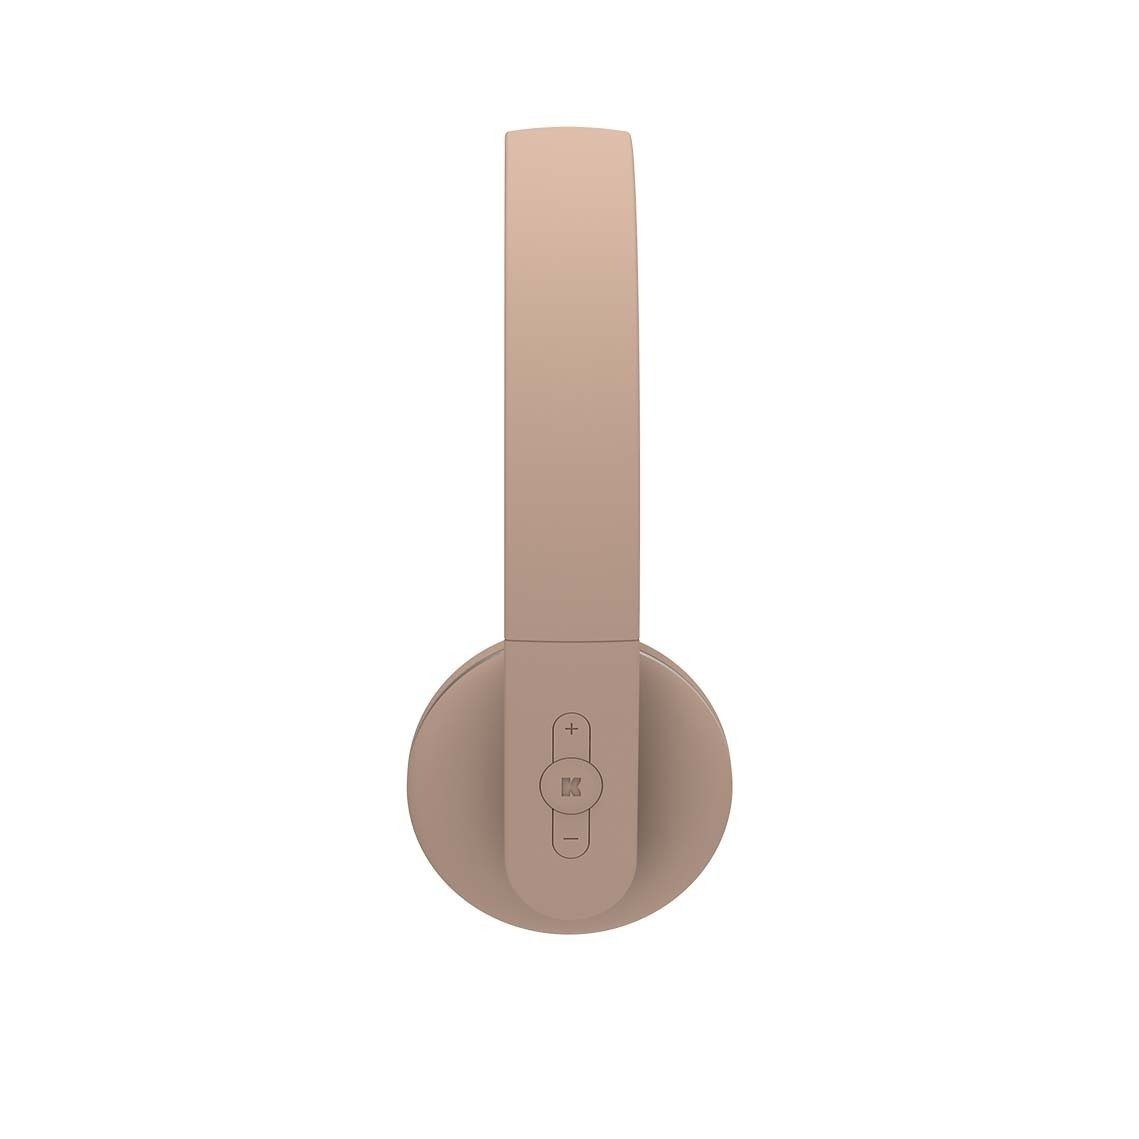 Kopfhörer) On-Ear-Kopfhörer Bluetooth II (KREAFUNK Ivory KREAFUNK Sand aHEAD